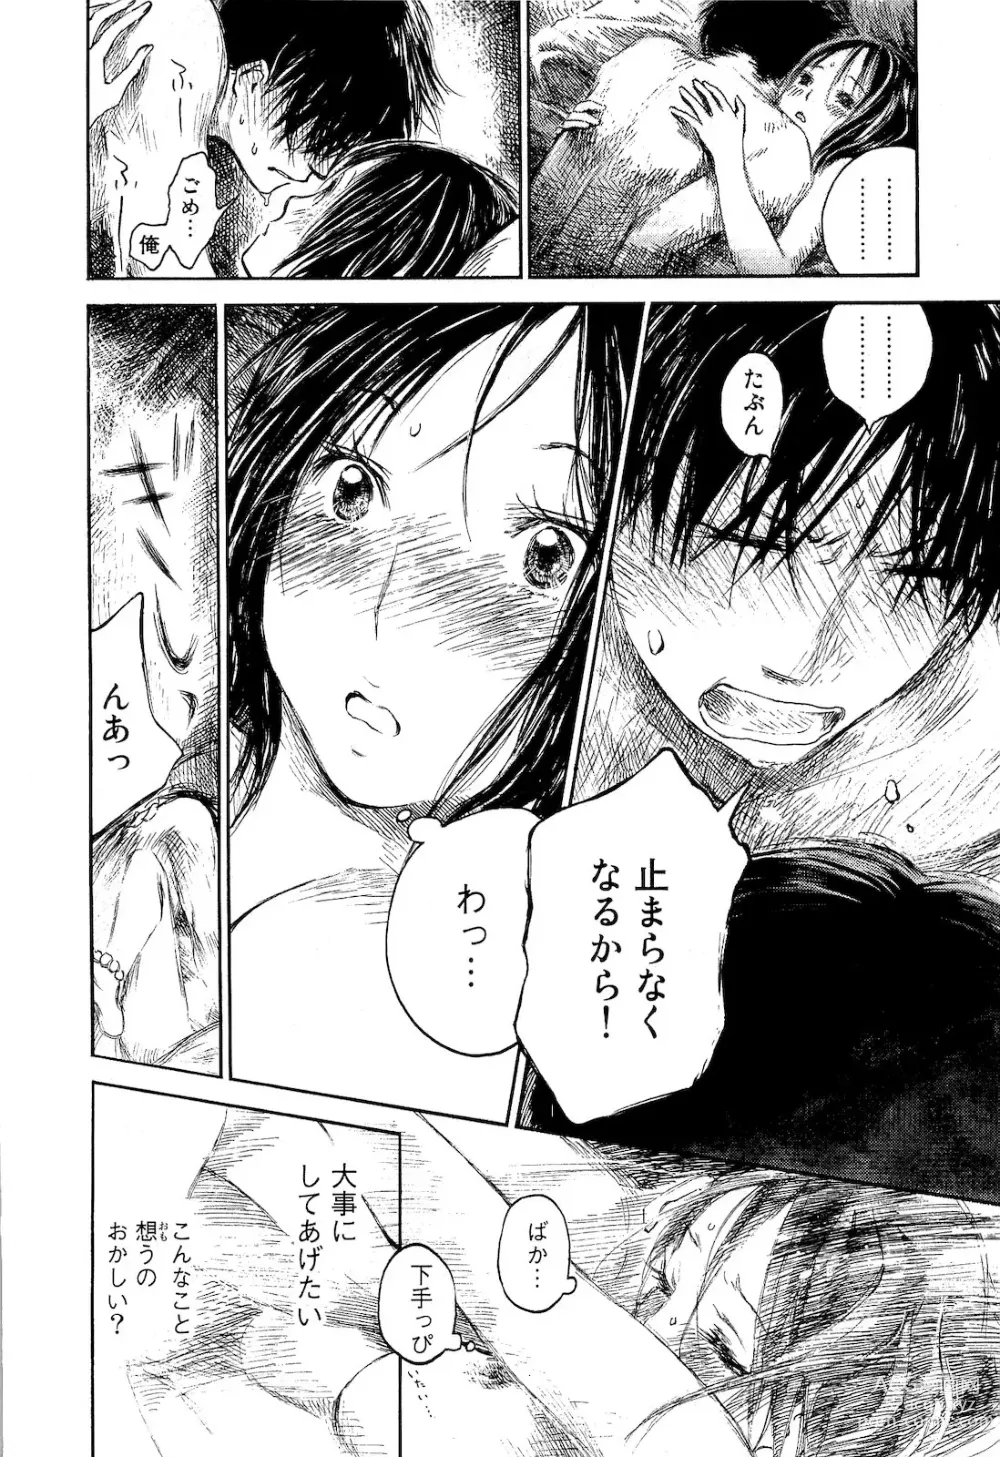 Page 11 of manga Natsu No Zenjitu